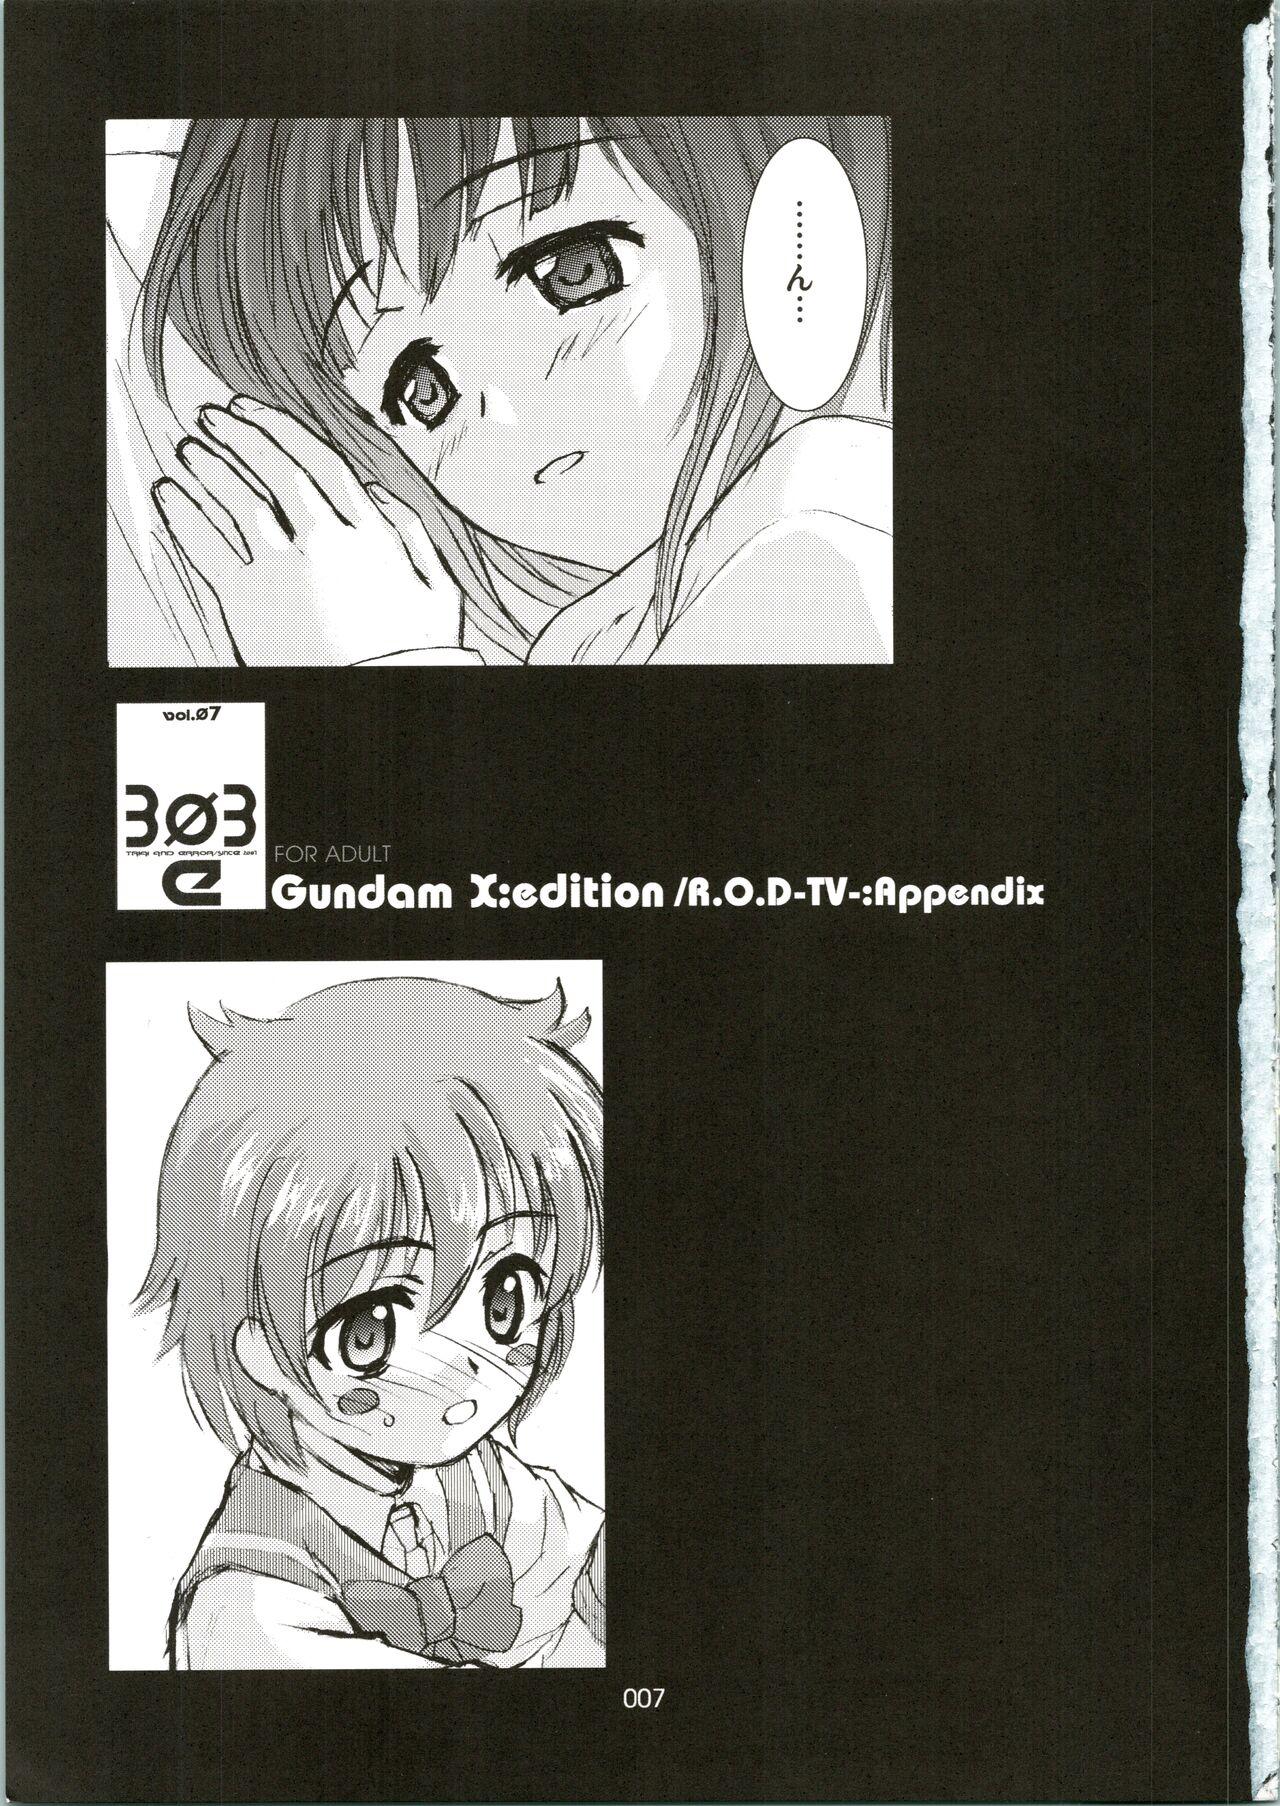 Siririca [WINDFALL (Aburaage)] 303e Vol. 07 (Gundam X, R.O.D the TV) ZHOA8229 - Read or die Gundam x Beard - Page 7